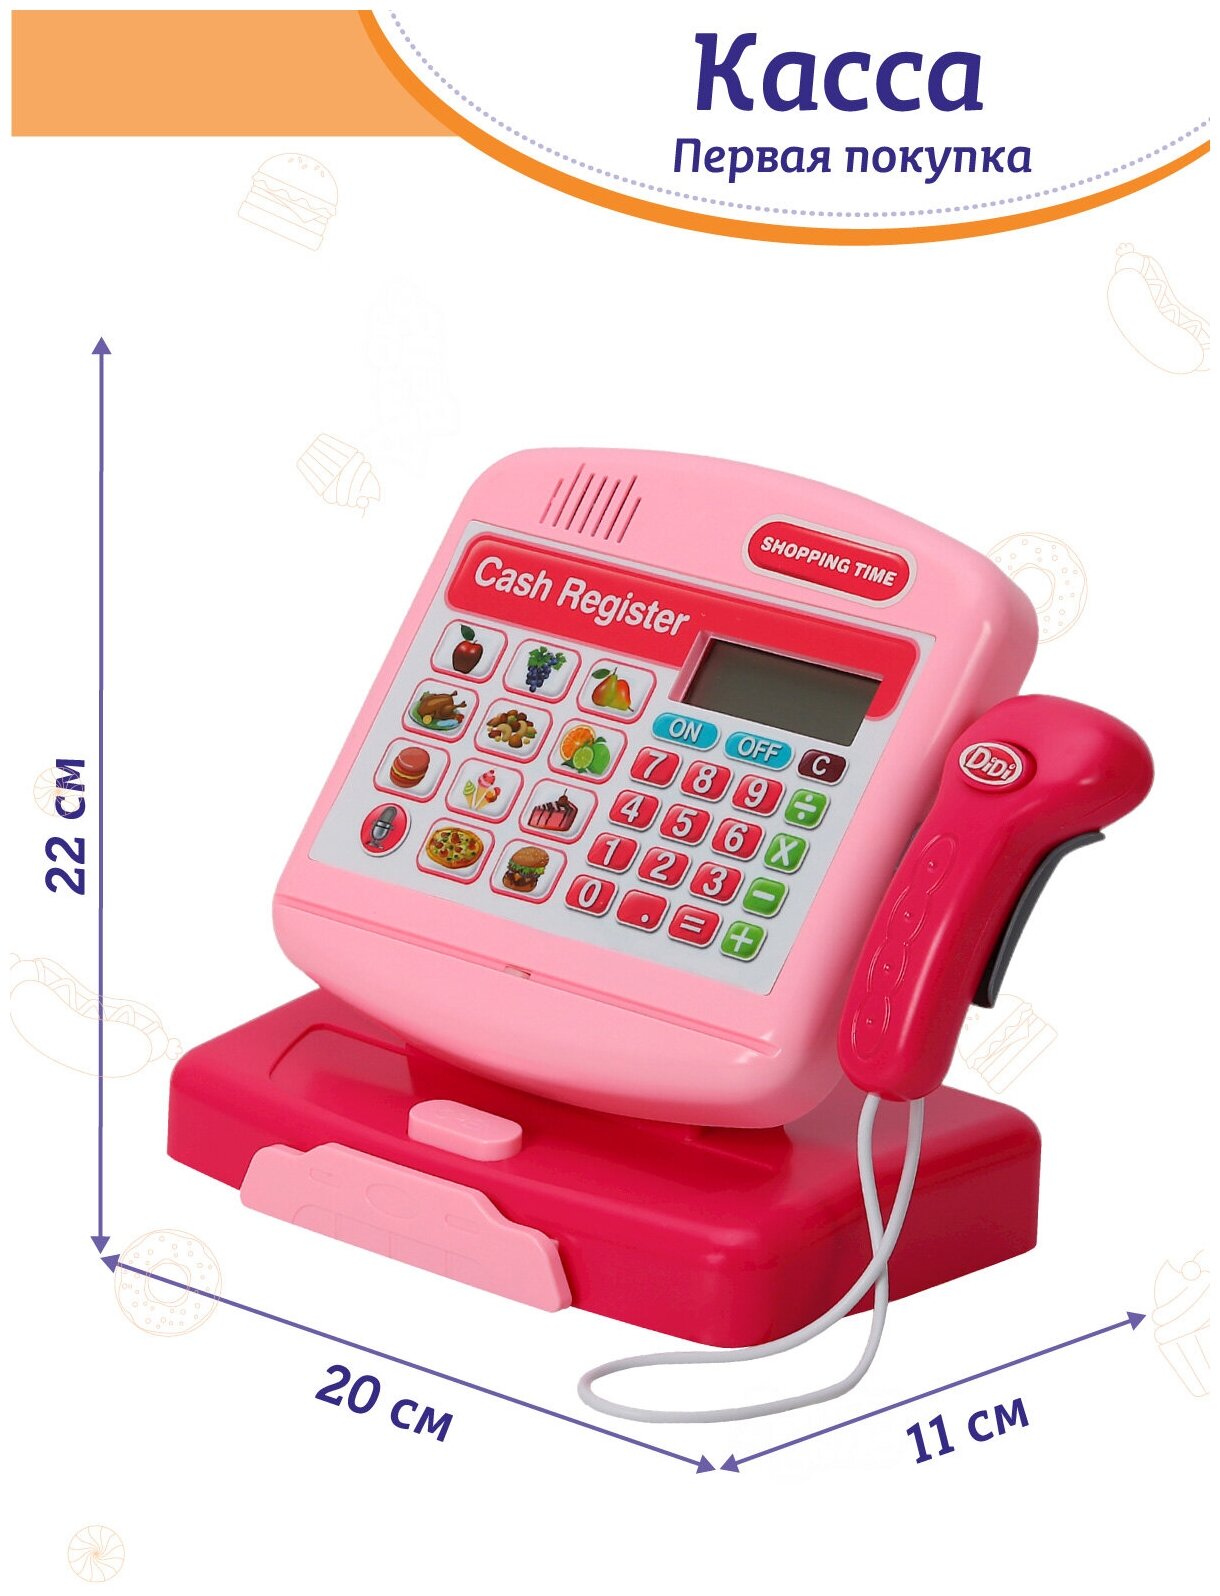 Игровой набор детский Касса, магазин, касса с калькулятором, сканер, развивающая, обучающая игрушка, свет, звук, розовый, JB0208183